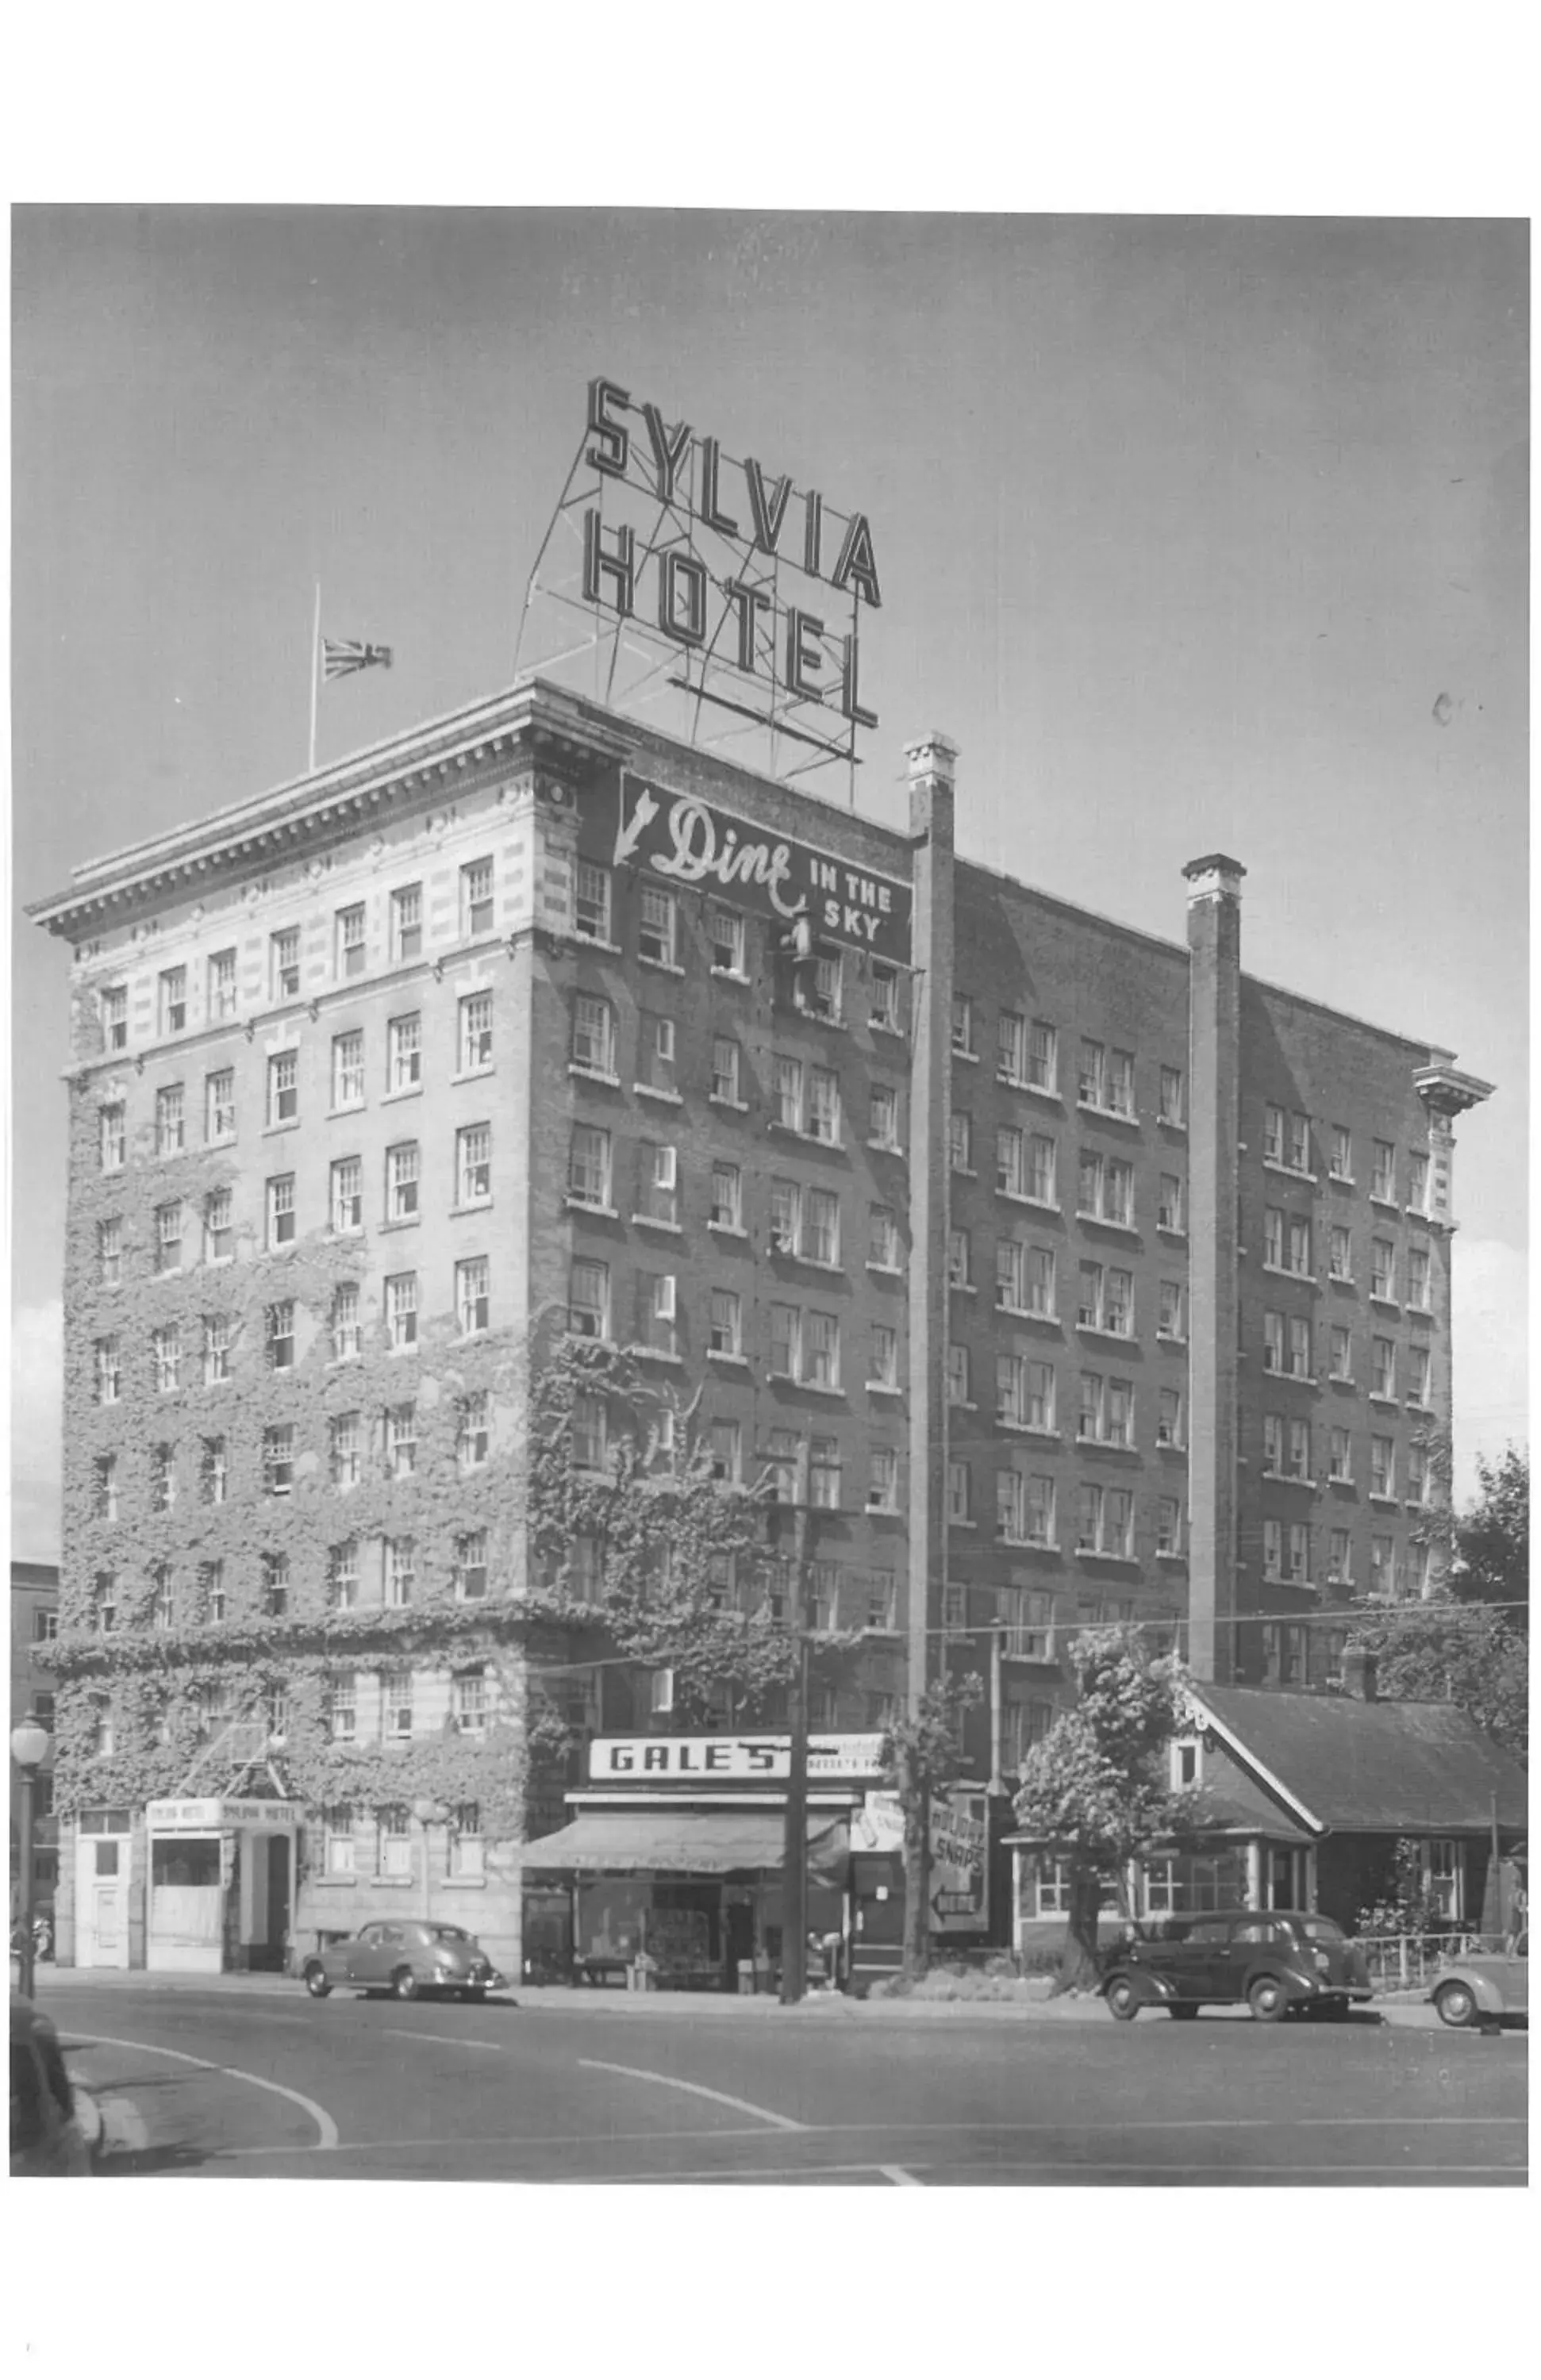 Facade/entrance, Property Building in The Sylvia Hotel